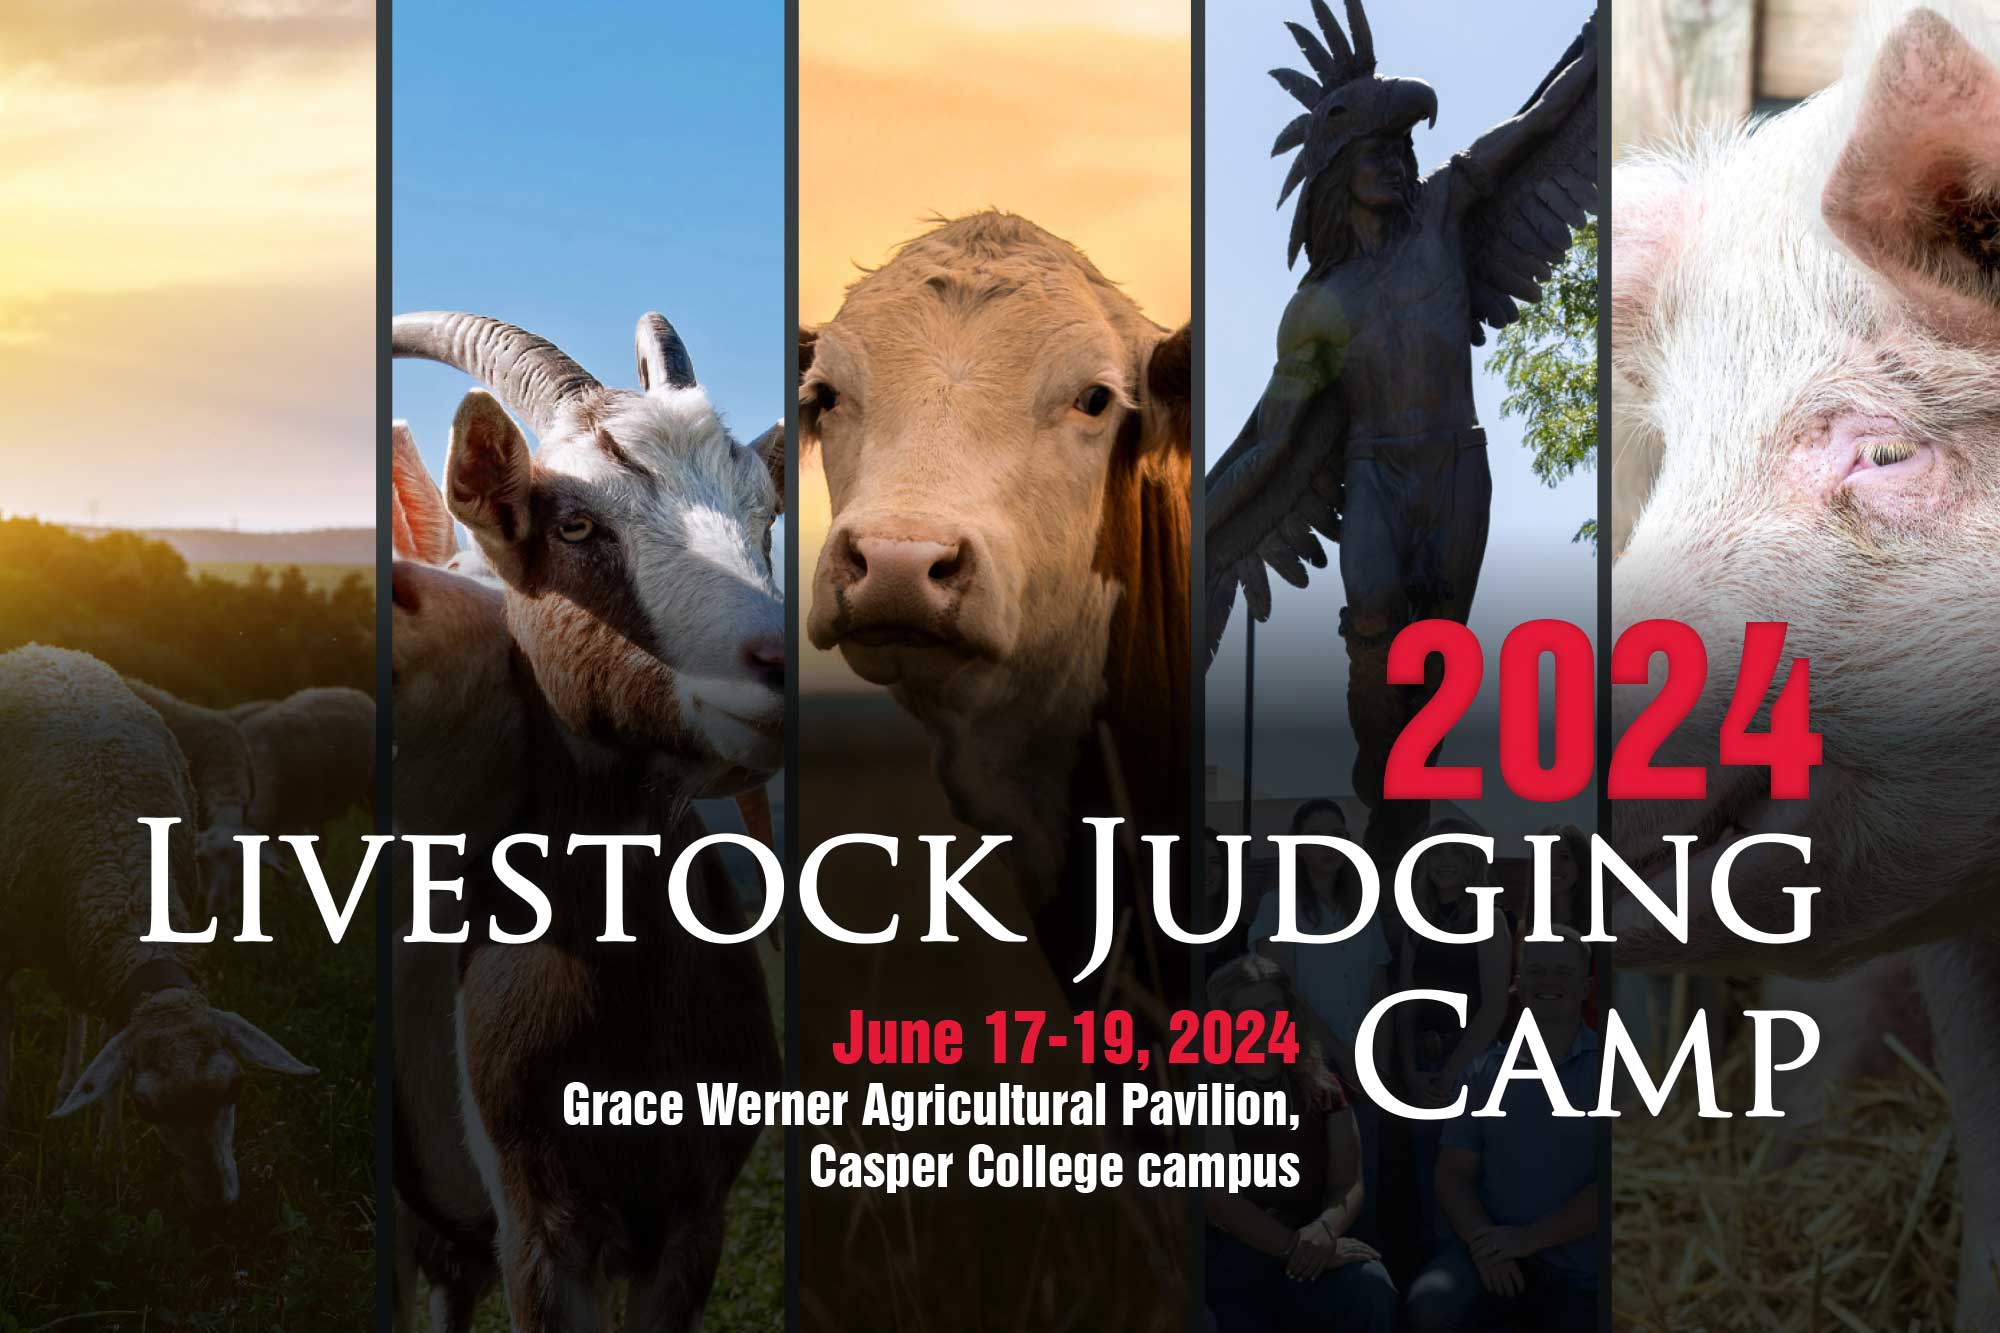 2024 livestock judging camp. june 17-19, 2024 Grace werner agricultural pavilion casper college campus